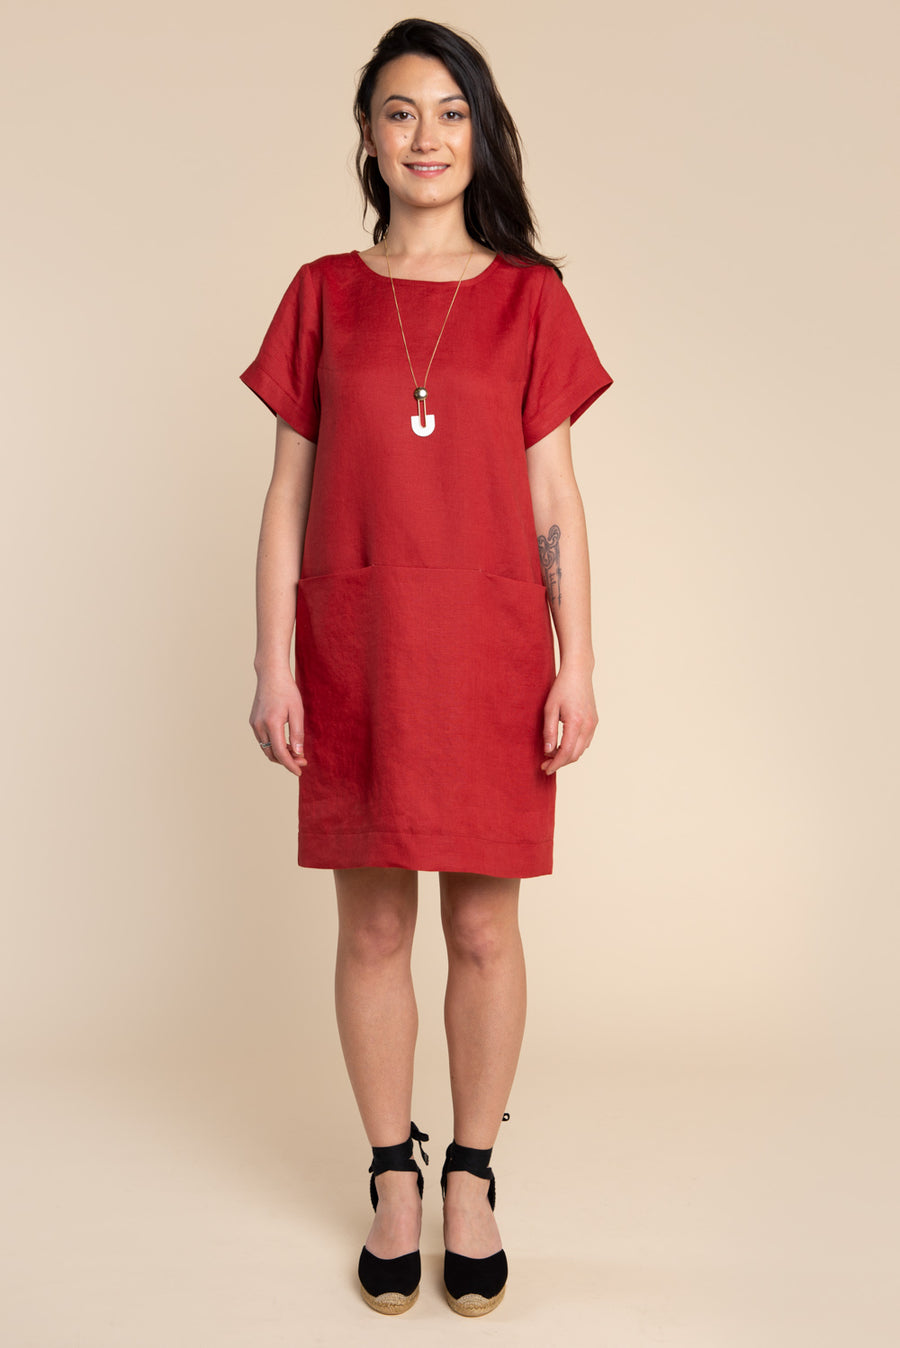 Cielo Top + Dress Pattern (WHOLESALE)